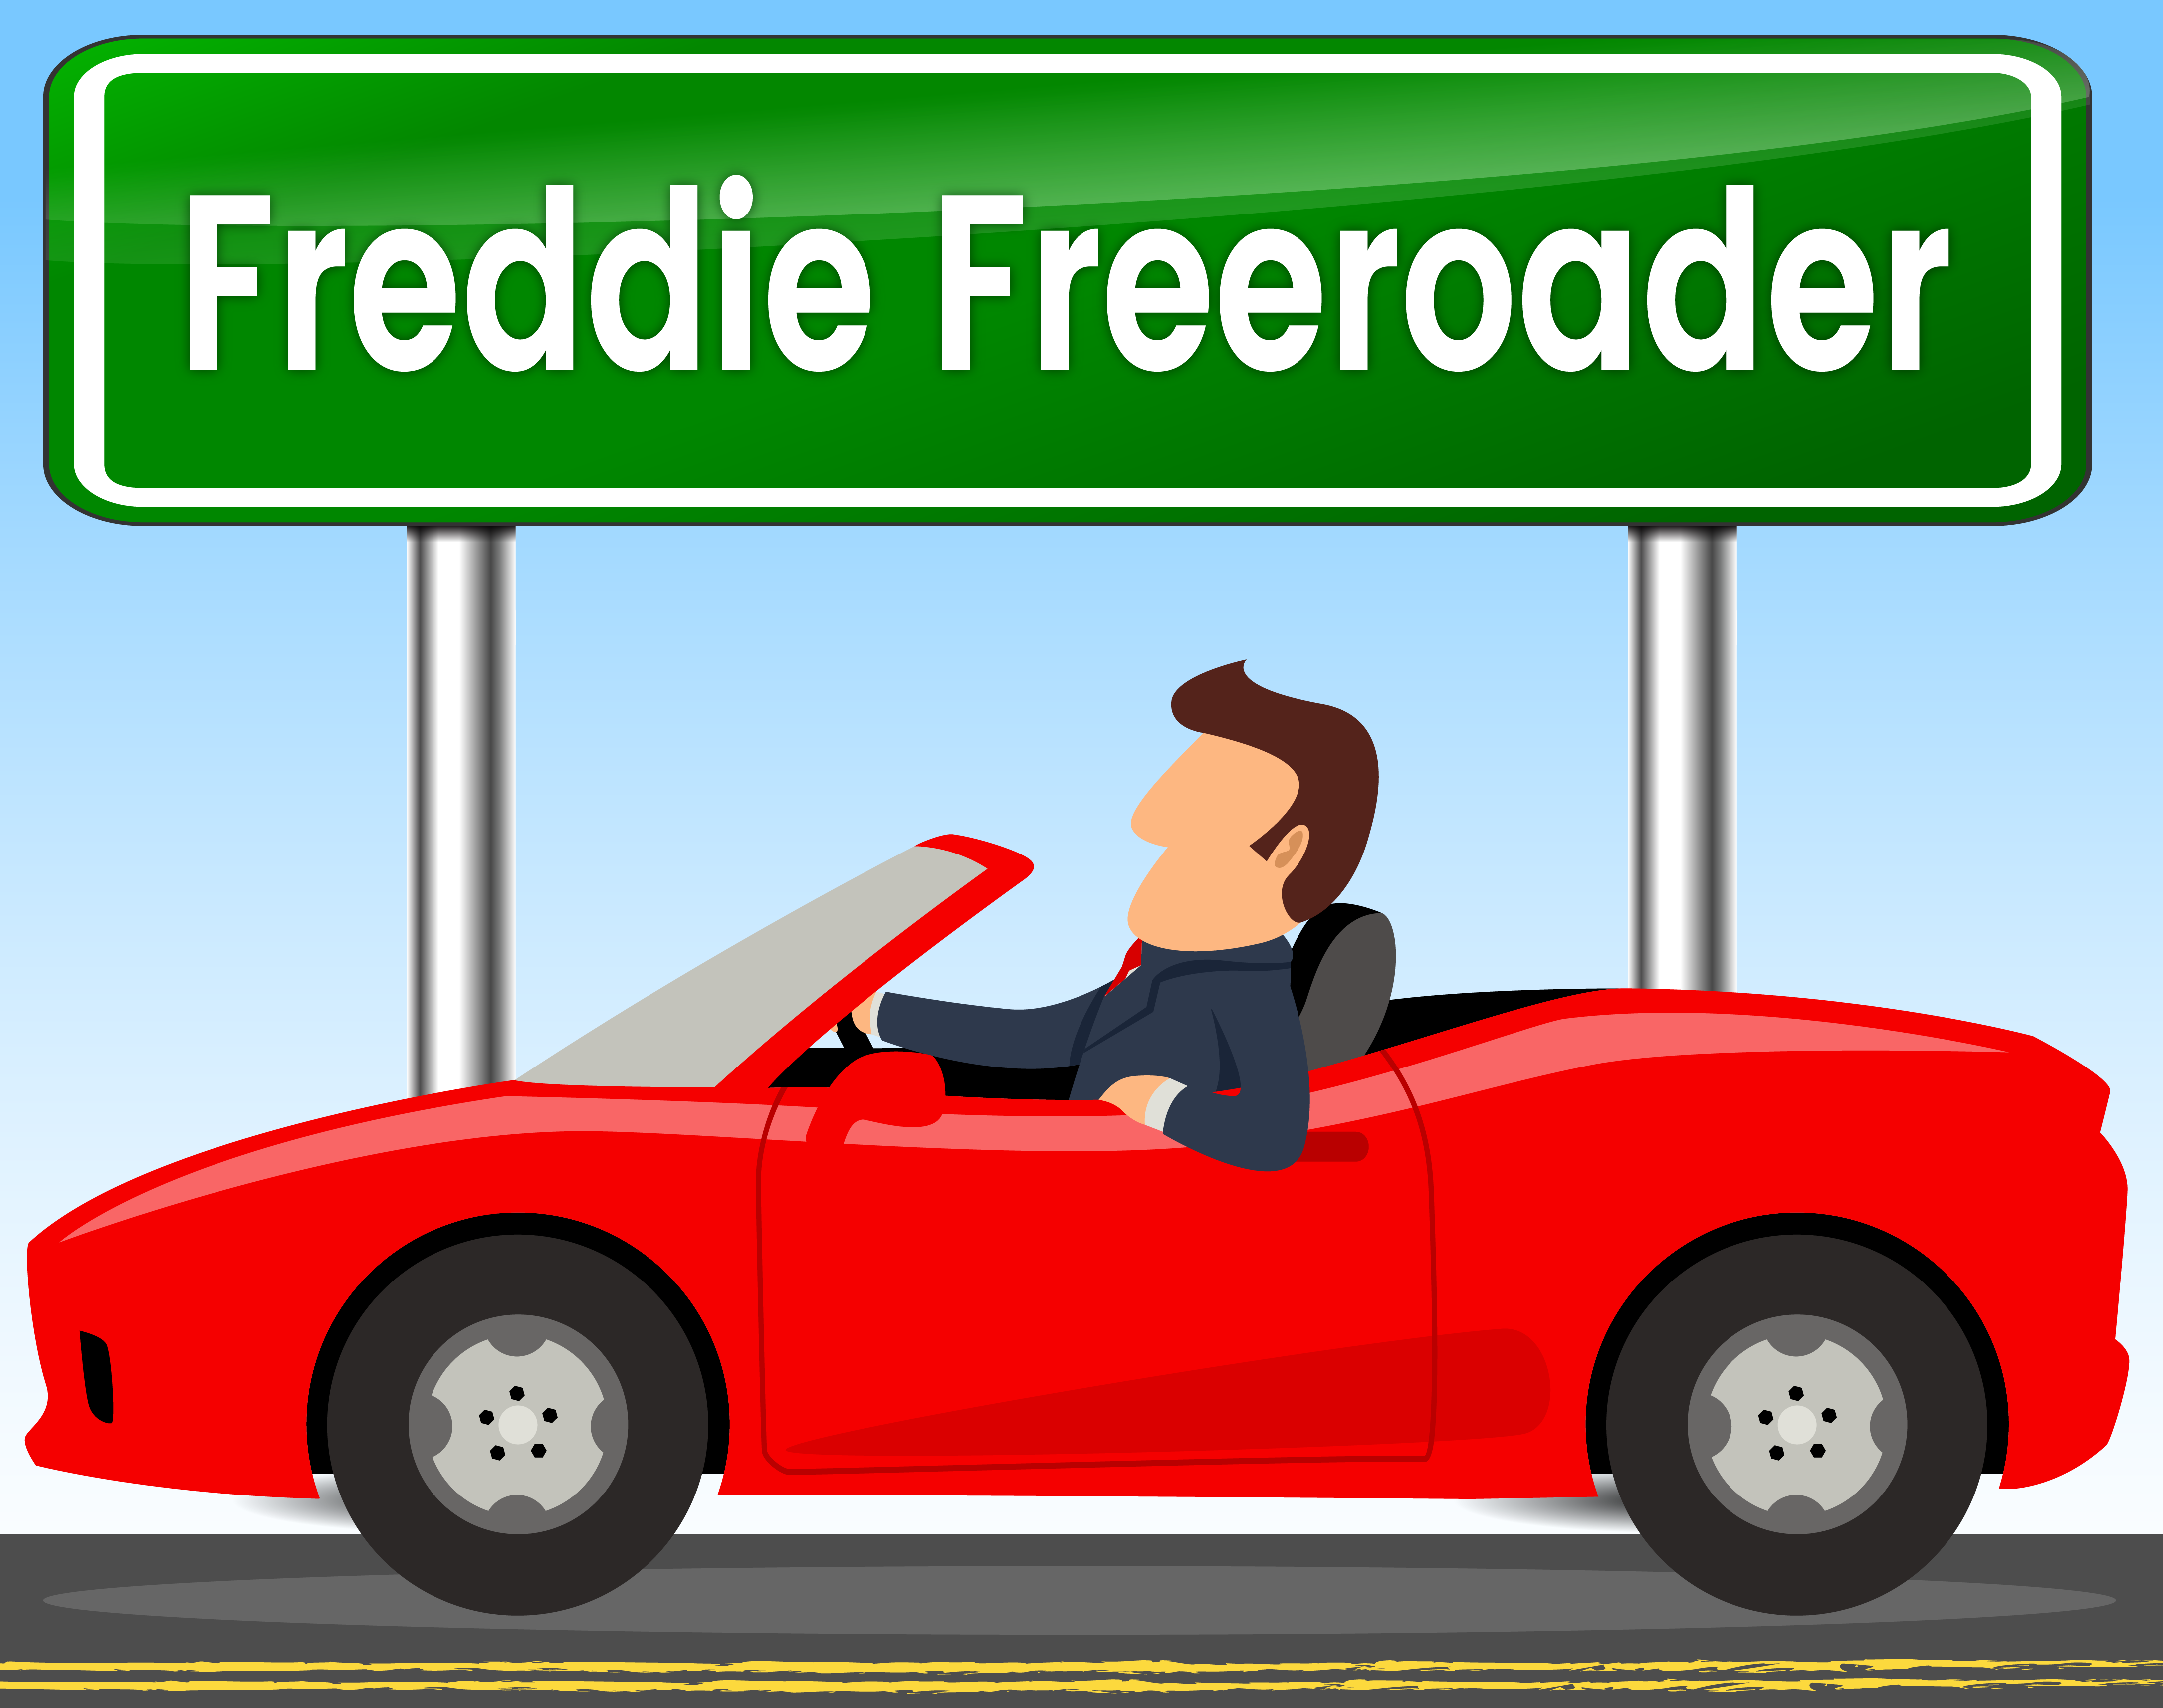 FreddieFreeroader.png